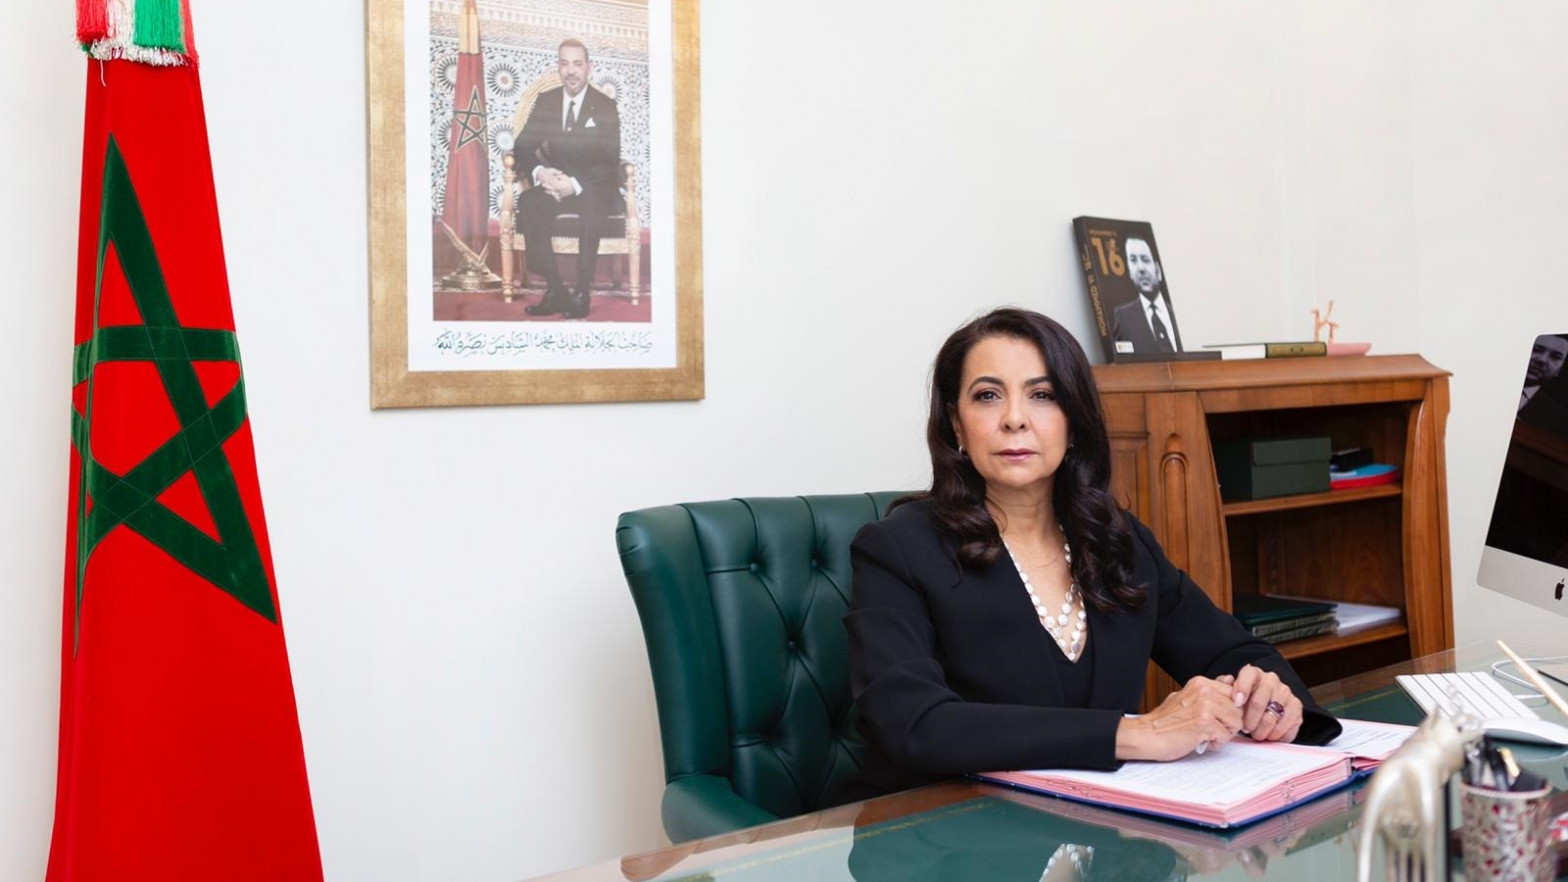 Mujeres diplomáticas en Madrid, con la embajadora de Marruecos como referencia de un moldeo de relaciones bilaterales.